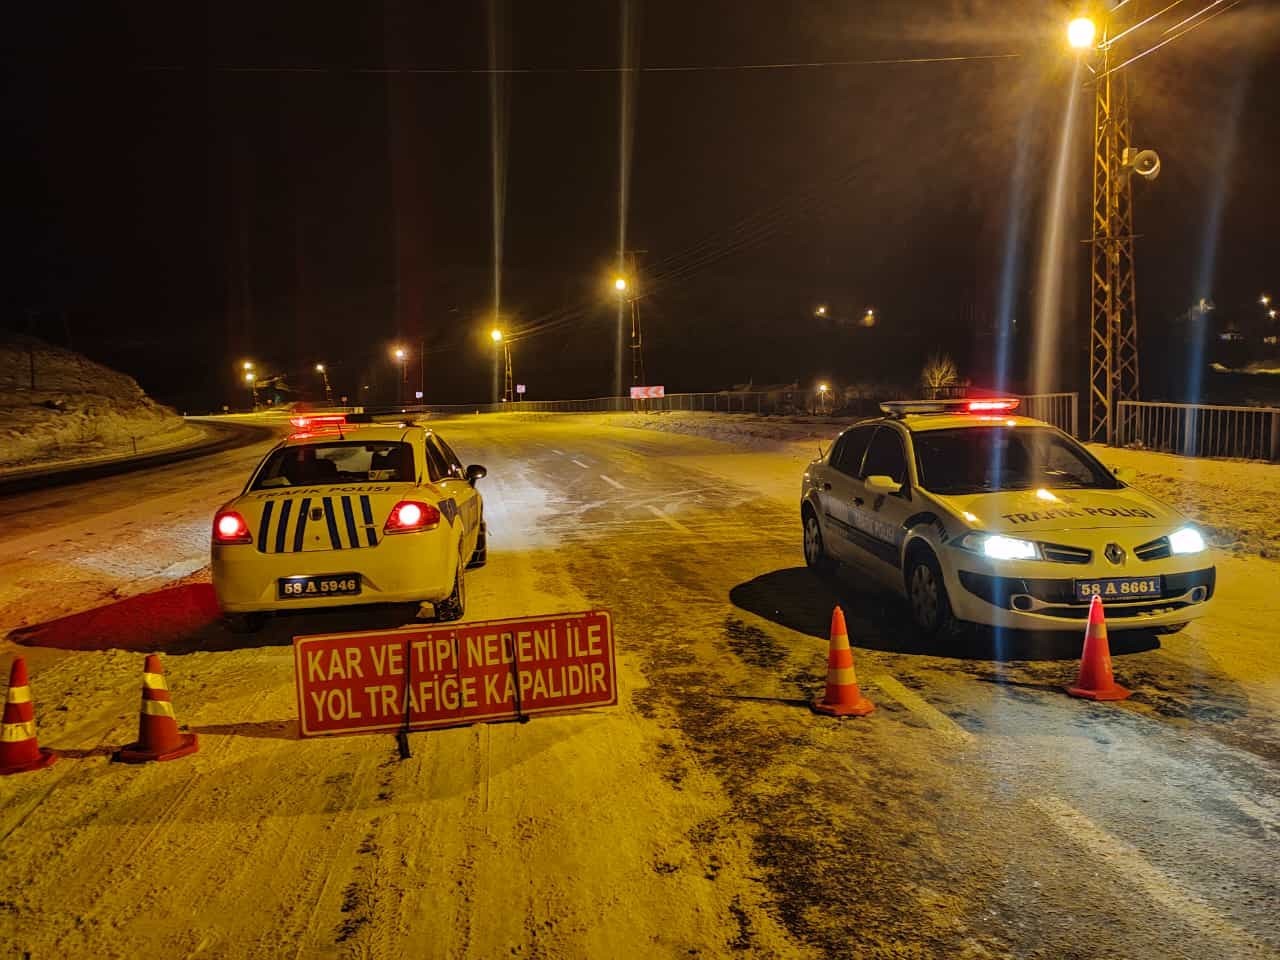 Tipi yolları kapattı, araç geçişleri durduruldu #sivas